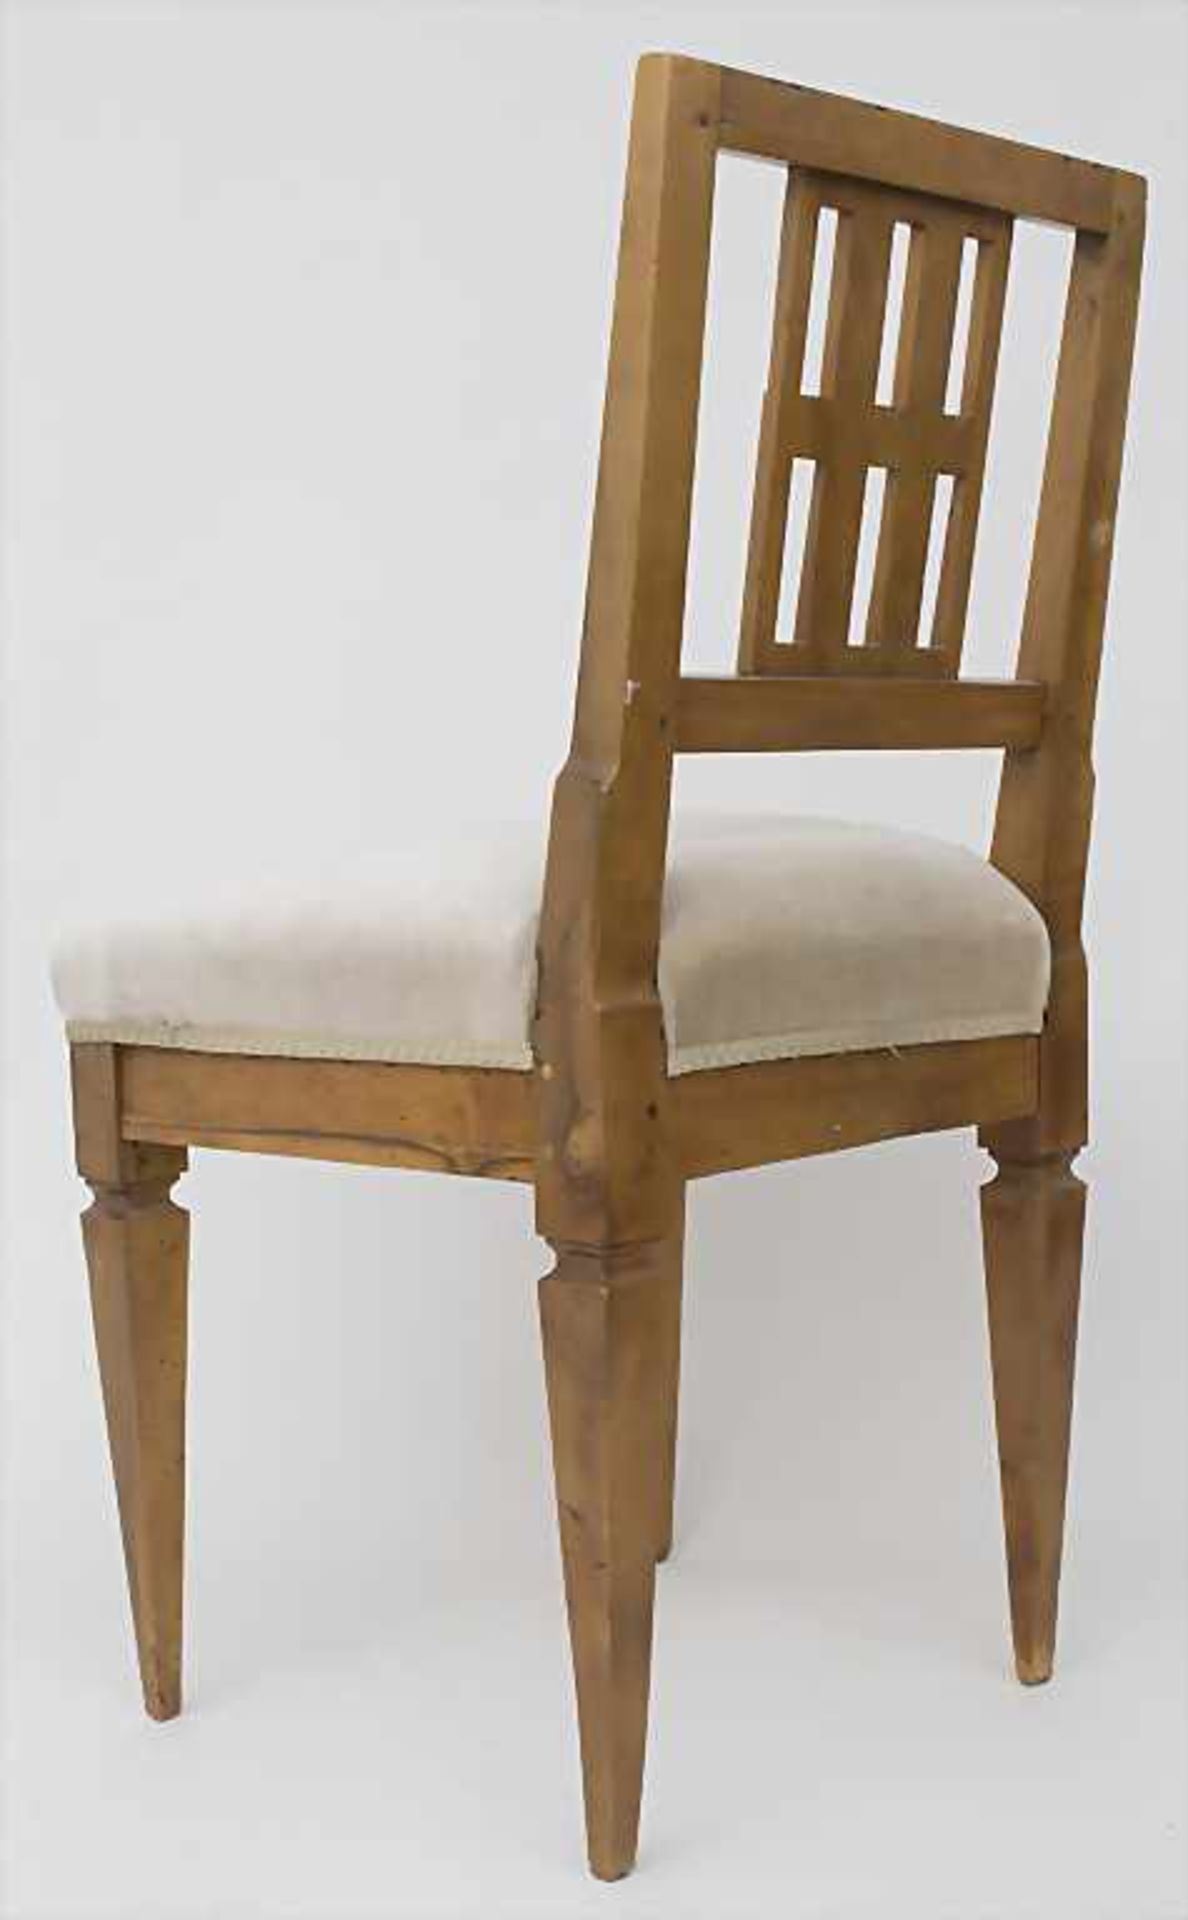 Klassizismus Stuhl / A classicism chair, um 1800 - Image 3 of 5